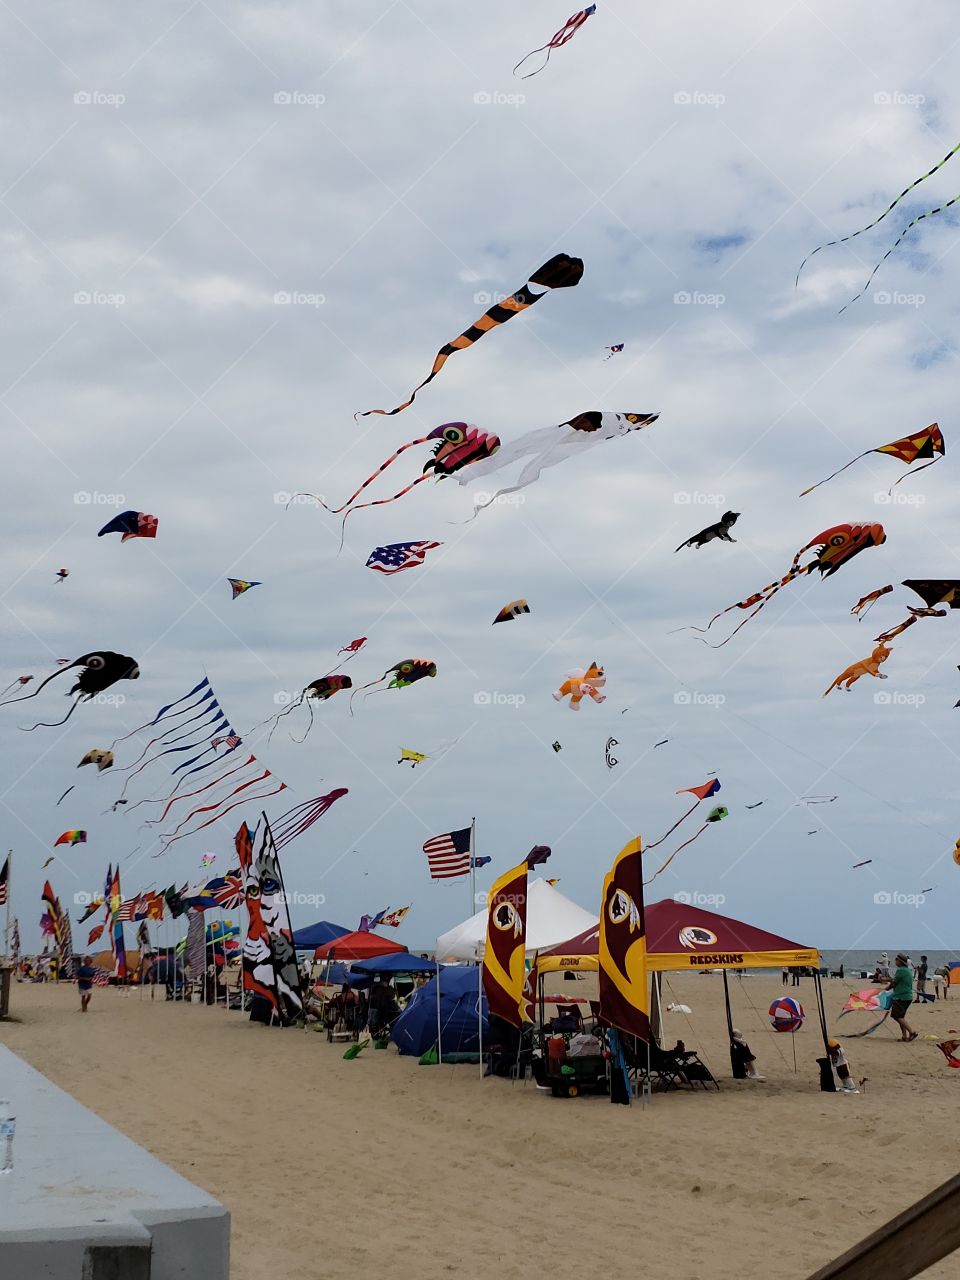 kites in flight